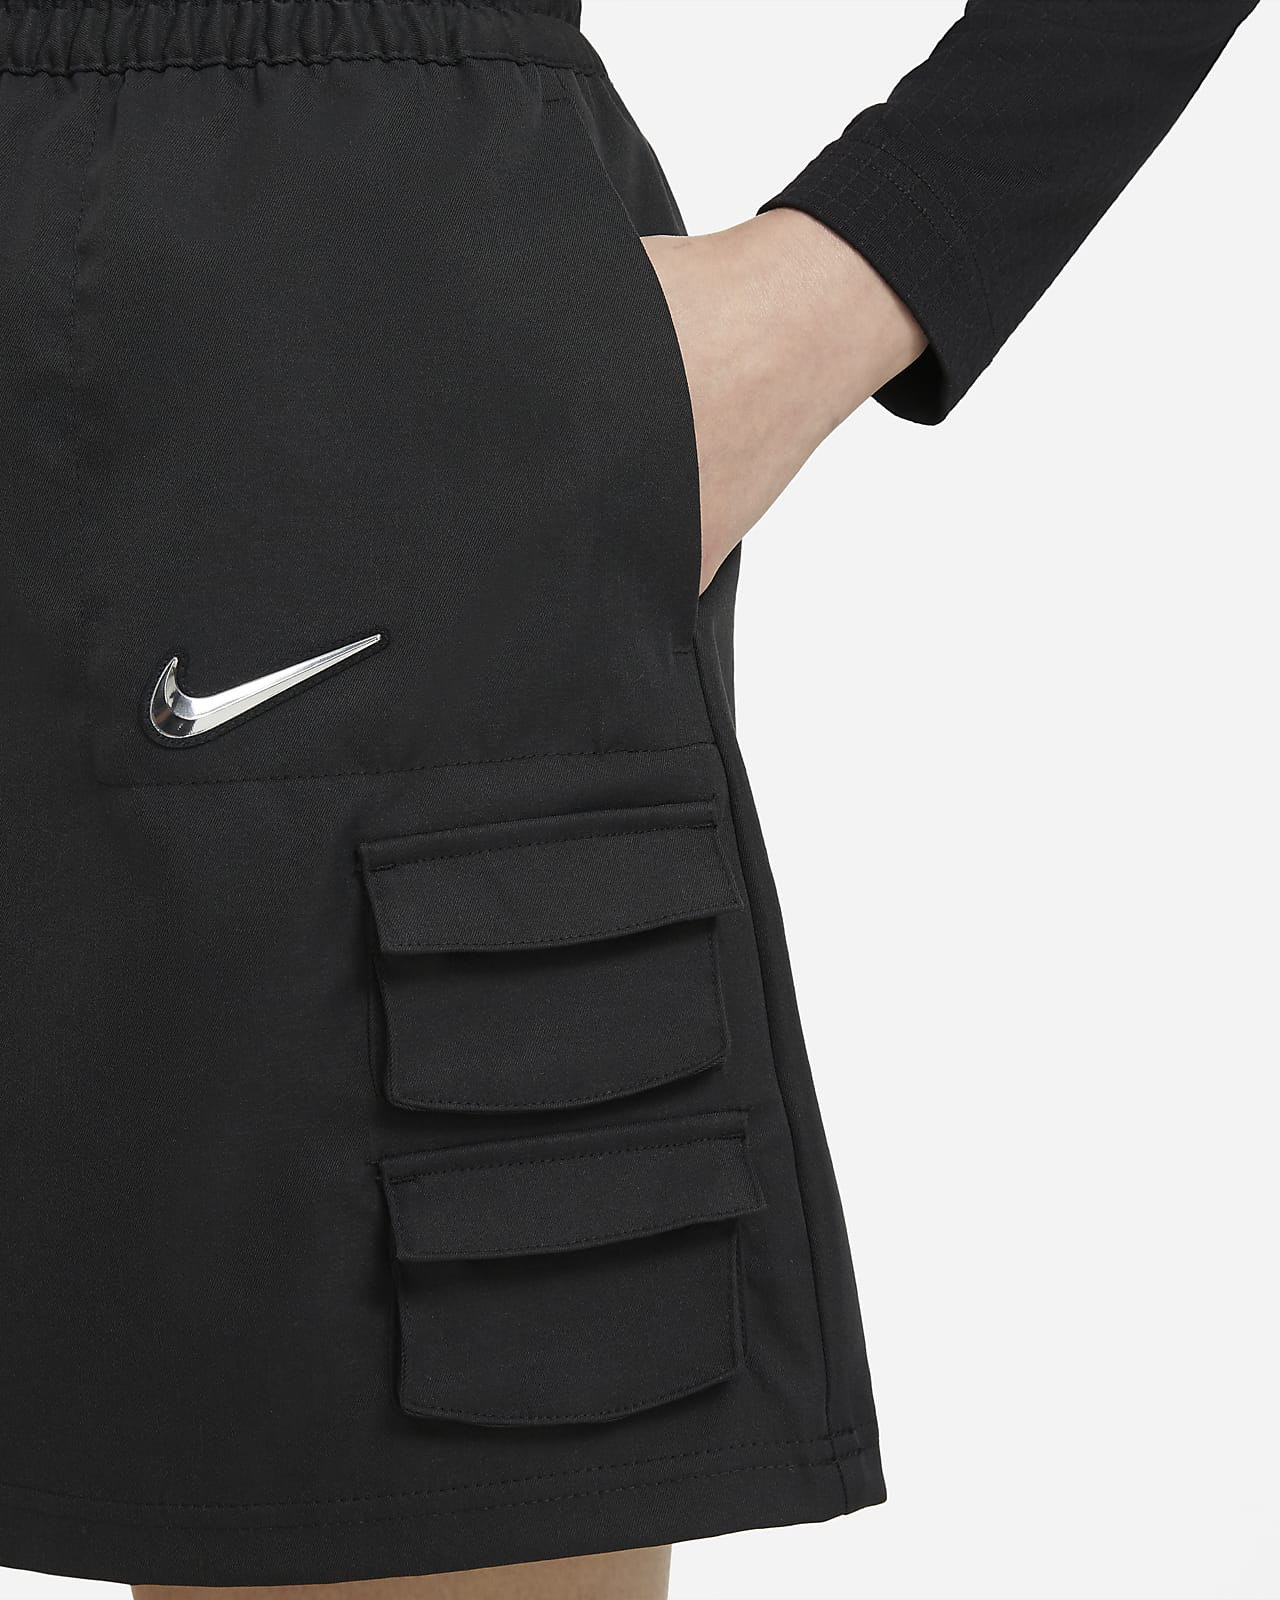 Nike公式 ナイキ スポーツウェア スウッシュ ウィメンズスカート オンラインストア 通販サイト